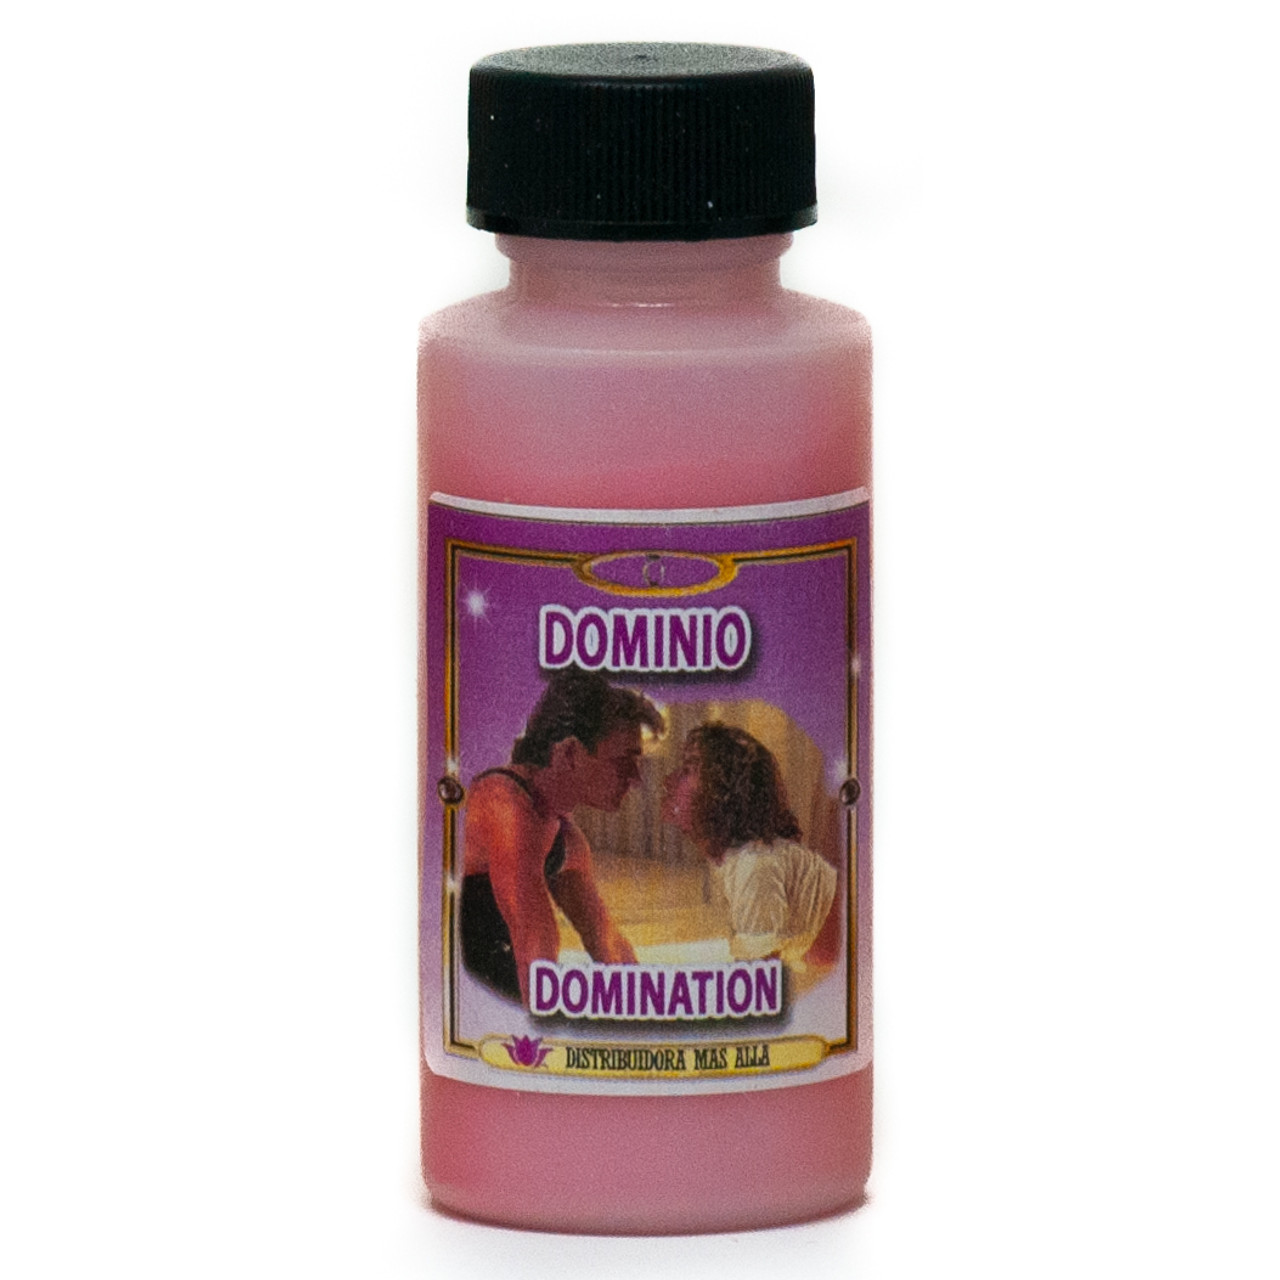 Polvo Dominio - Domination  Powder For Spells -